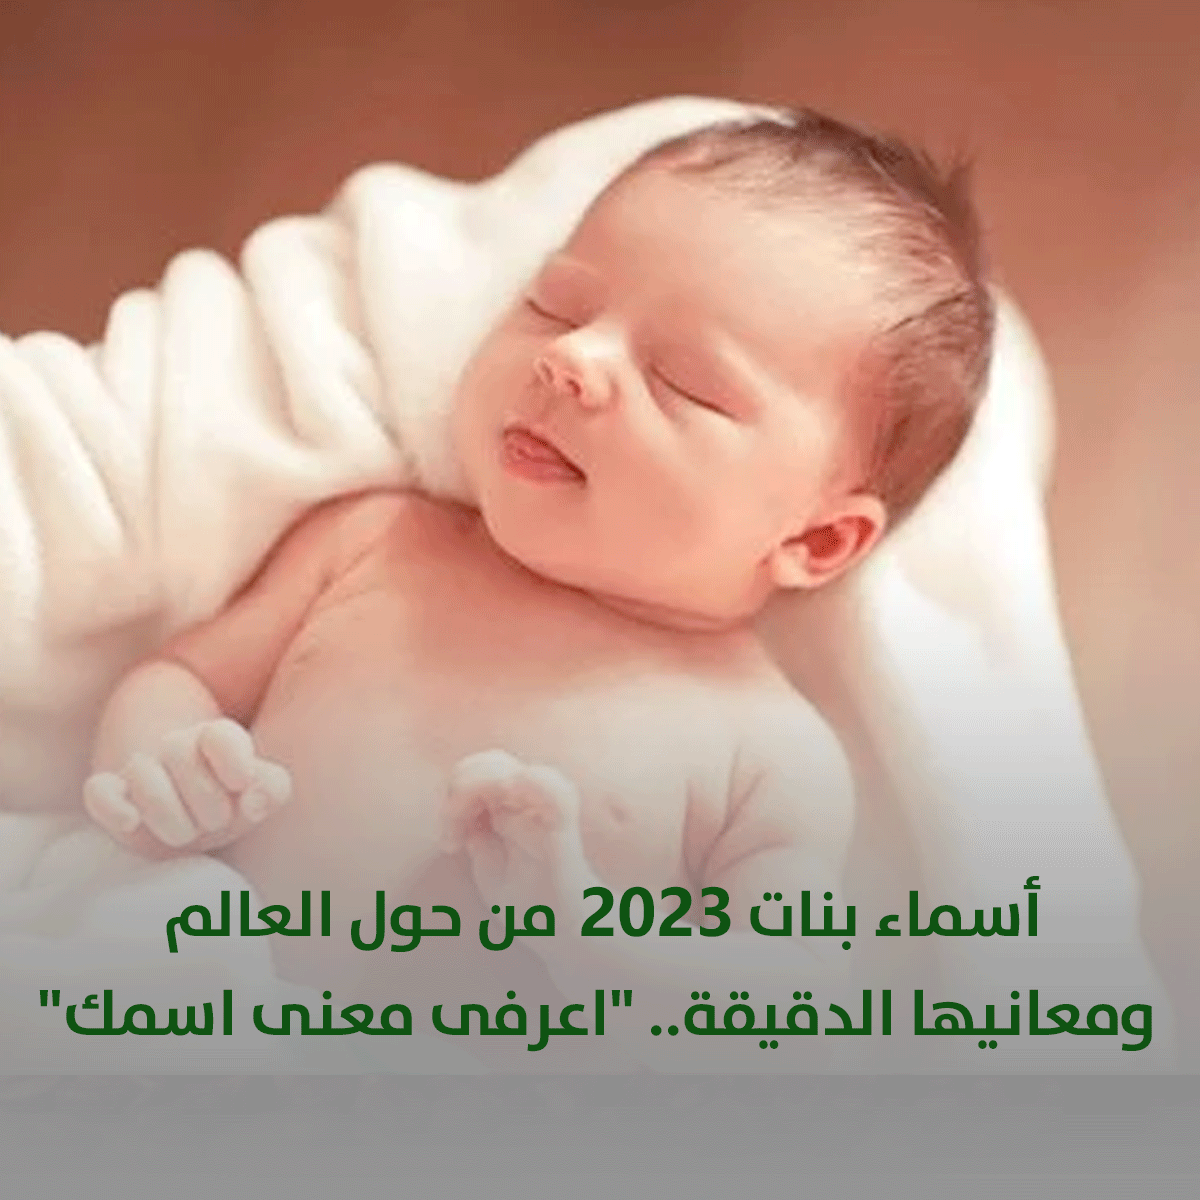 أسماء بنات 2023 من حول العالم